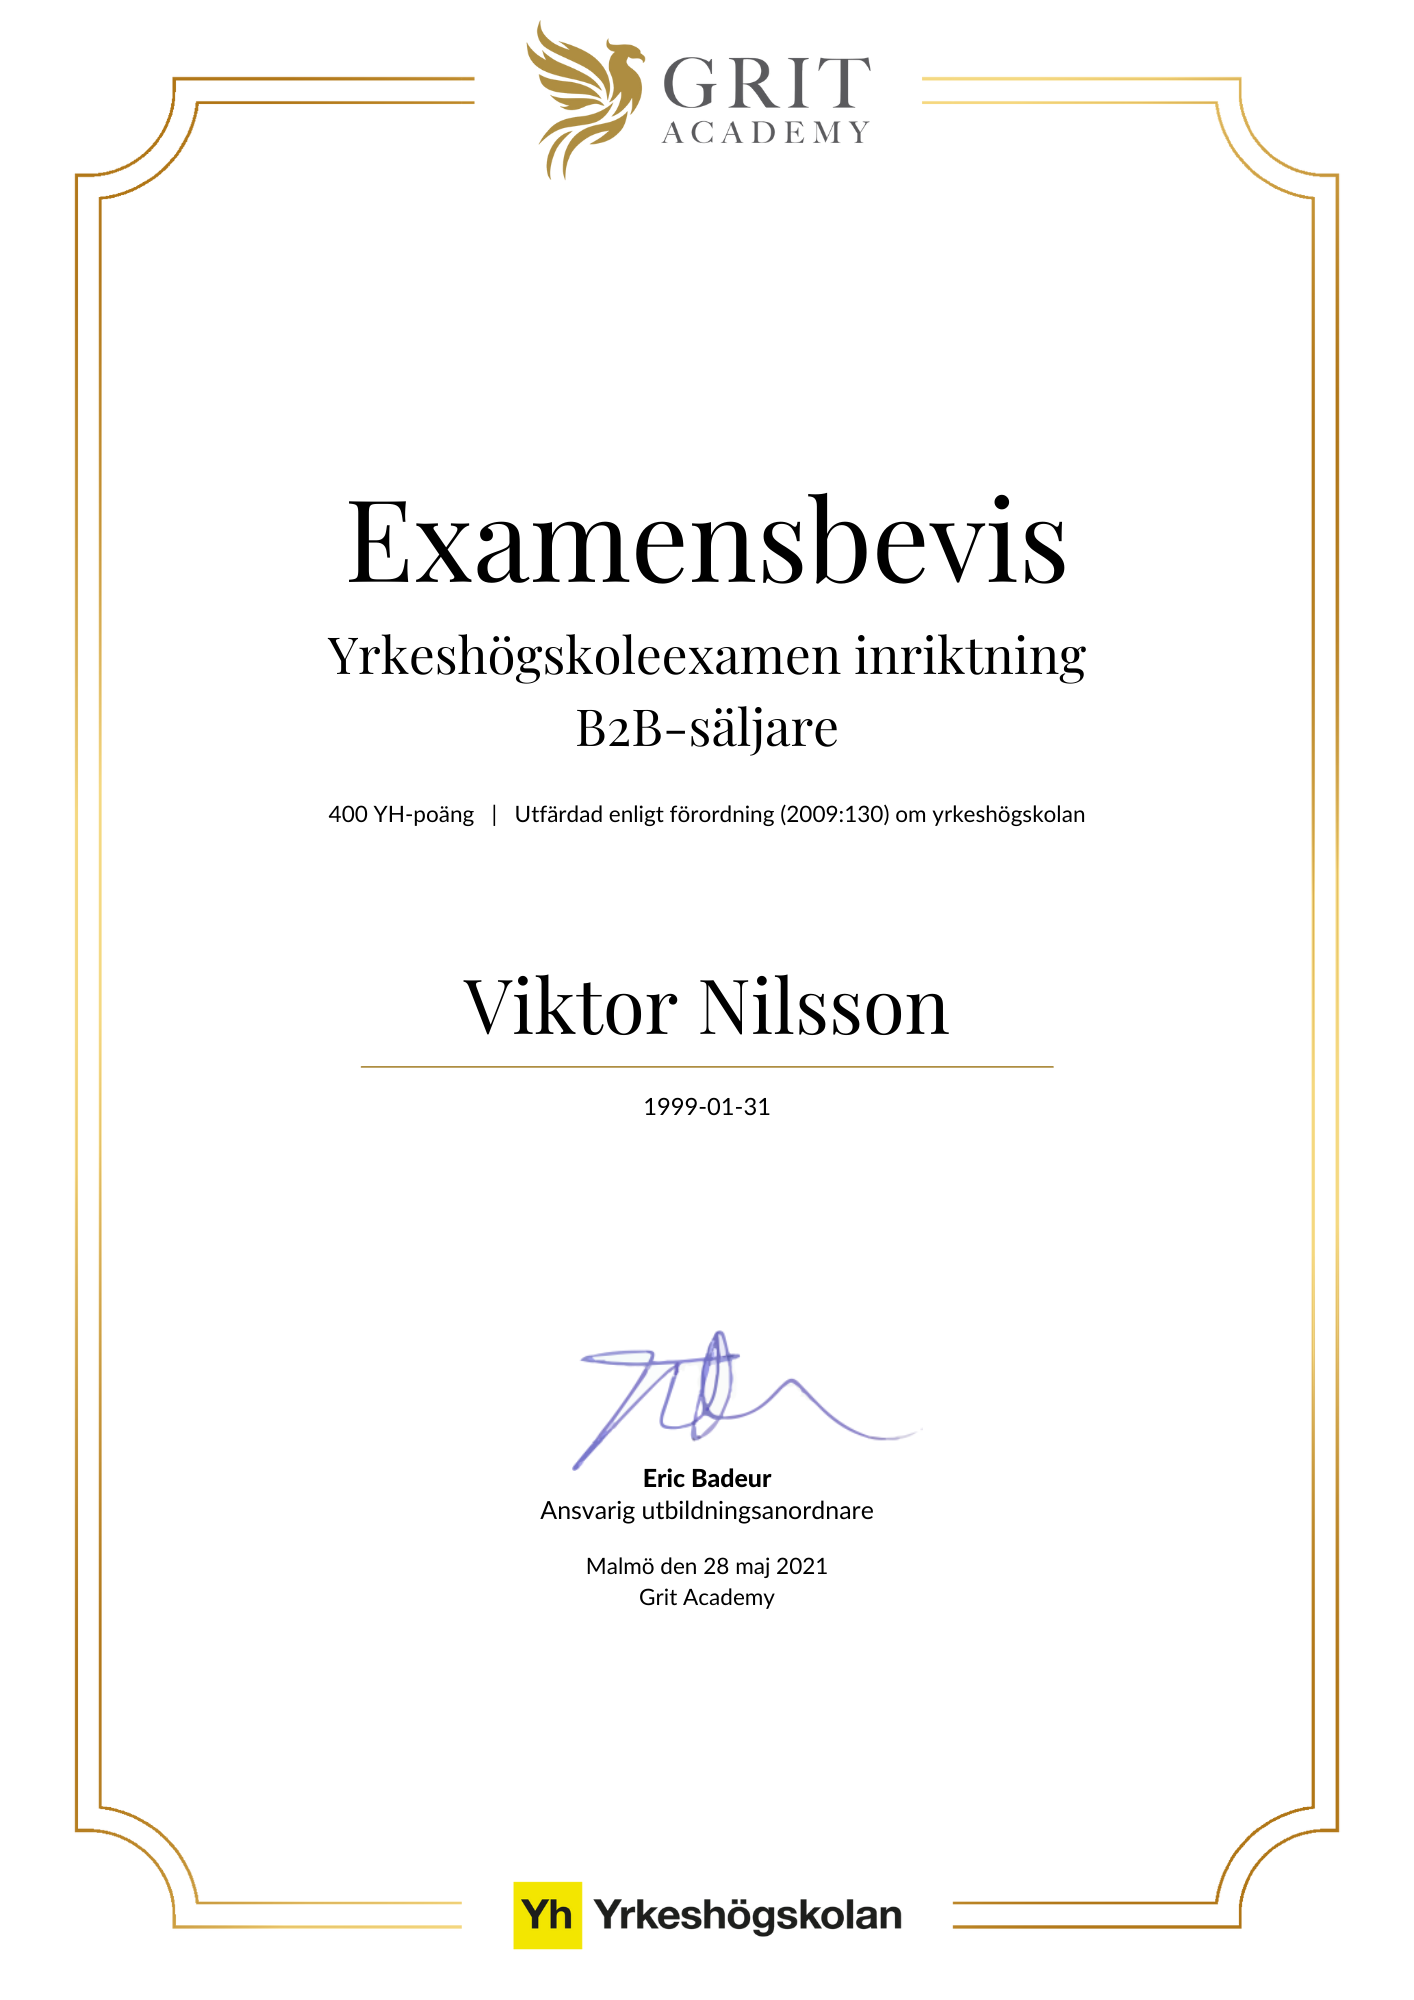 Examensbevis Viktor Nilsson - 1